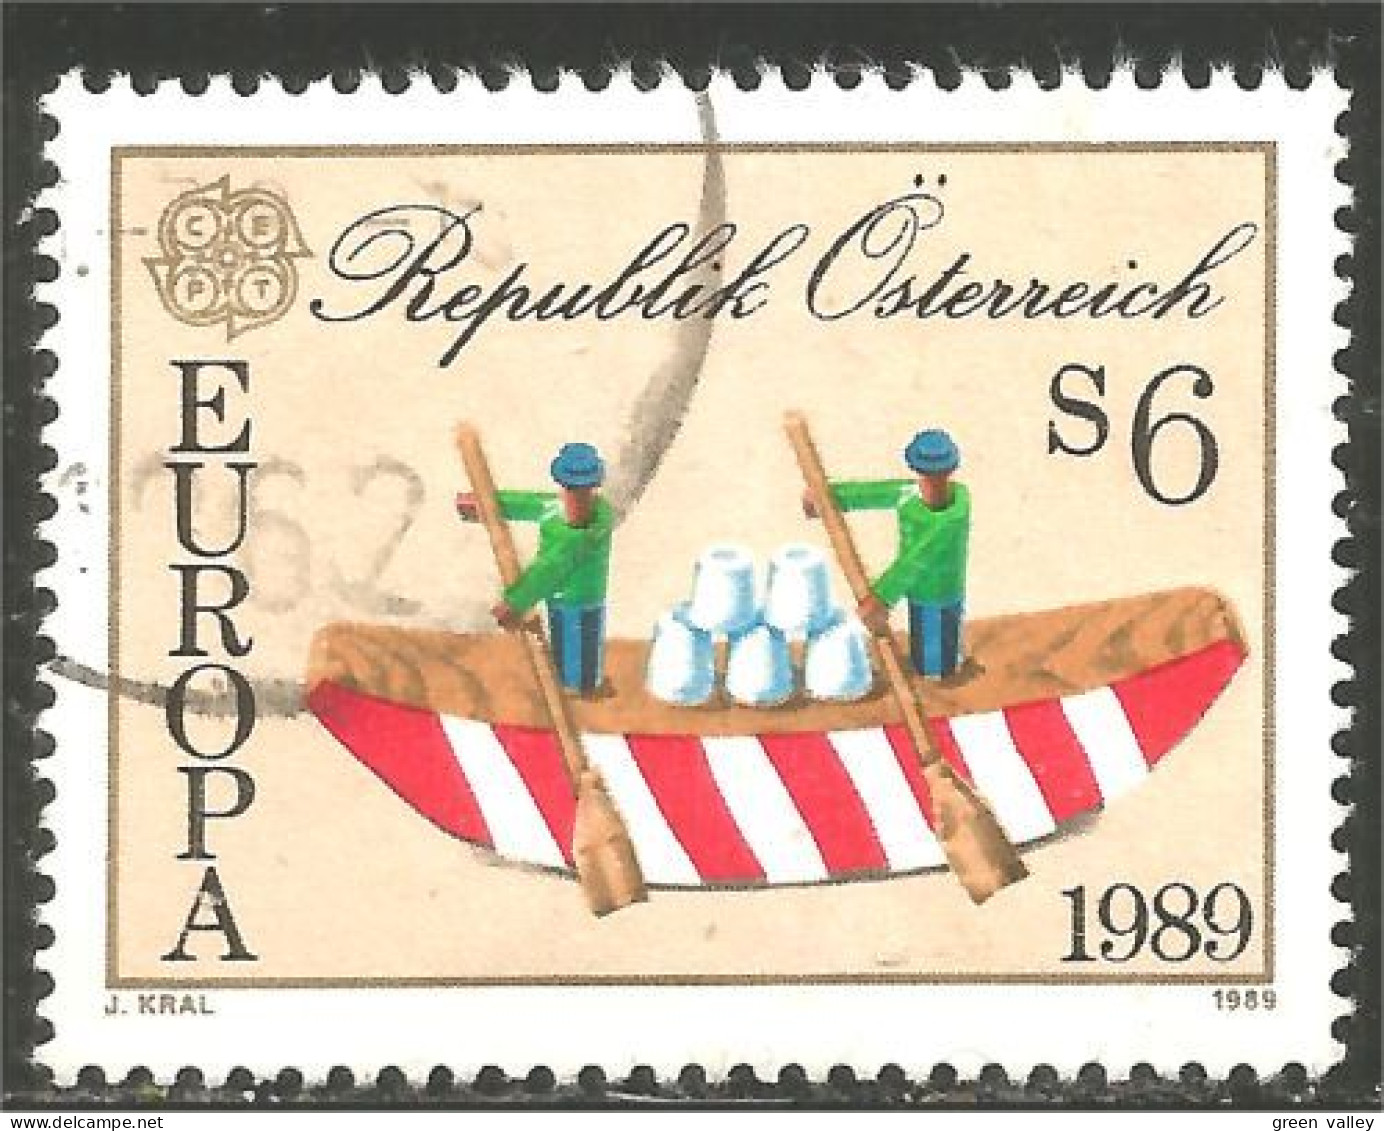 EU89-14c EUROPA-CEPT 1989 Austria Boat Bateau Jeux Enfants Children Games Kinderspiele - Bateaux